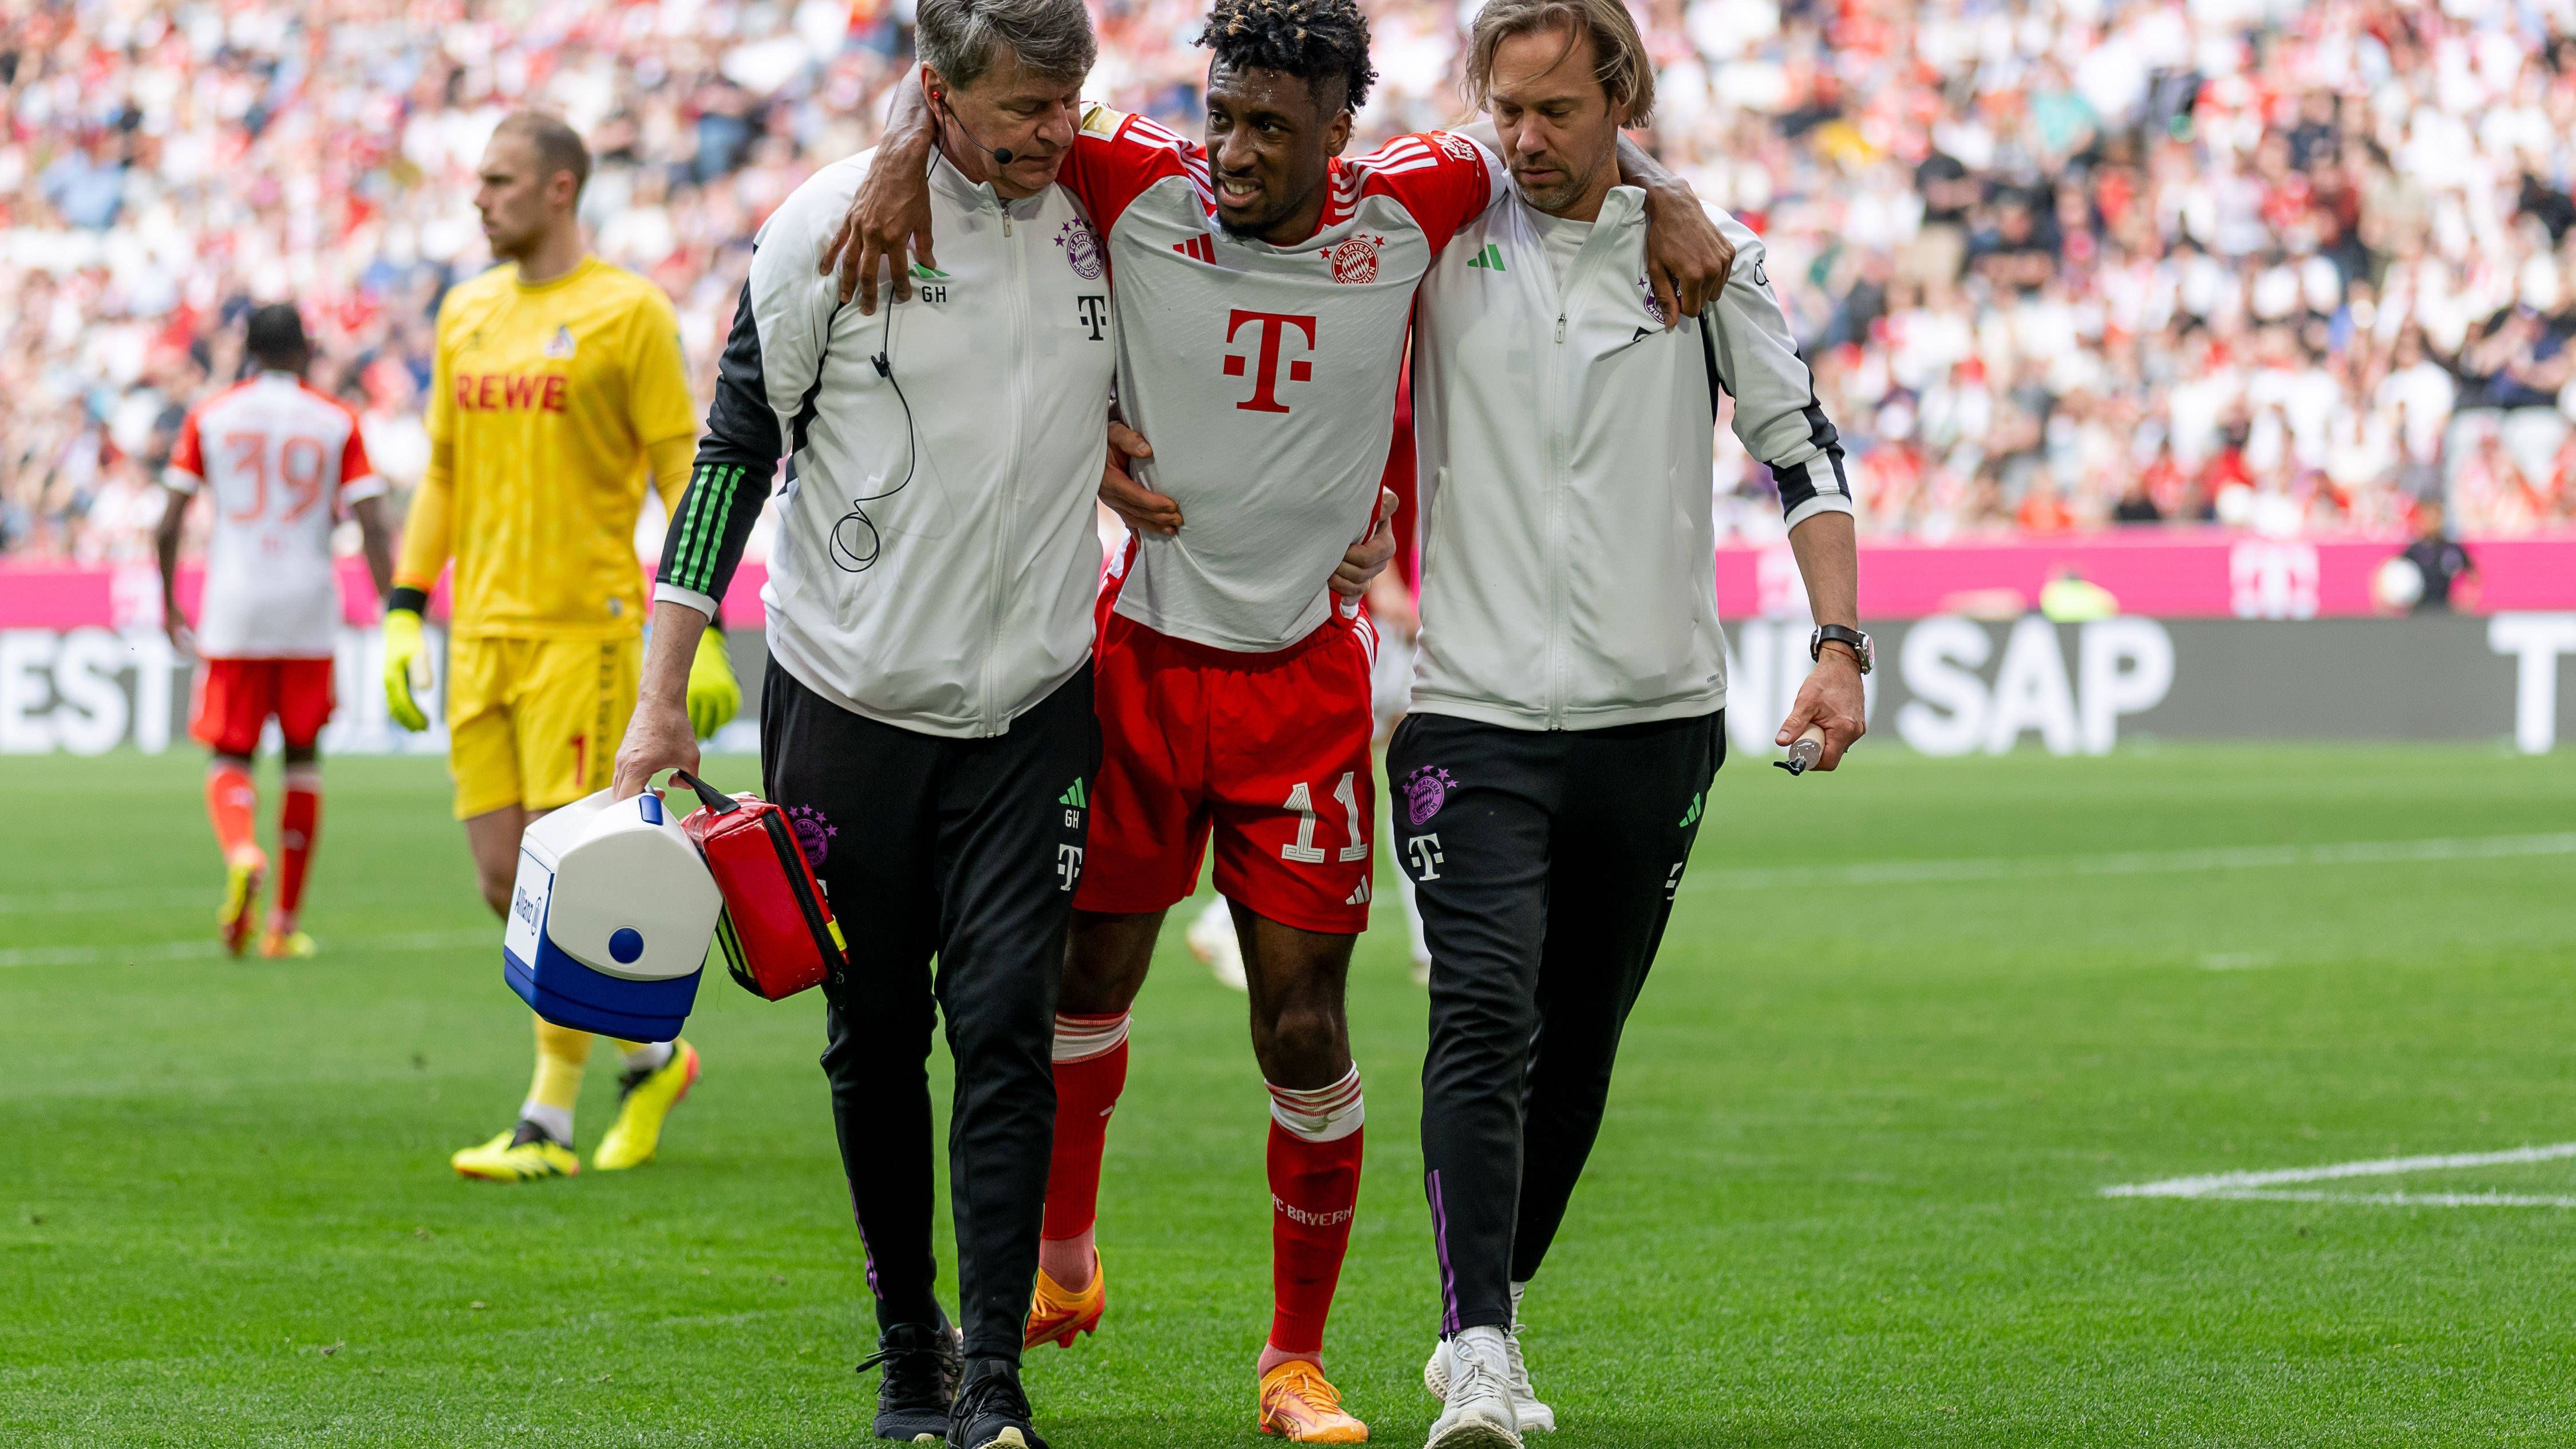 <strong>Die lange Verletztenakte des FC Bayern</strong><br>Nächster Verletzungs-Schock für die Bayern: Kingsley Coman zog sich im Spiel gegen den 1. FC Köln eine Muskelbündelverletzung in den Adduktoren zu und fällt wochenlang aus. Ein weiterer Eintrag in der langen Krankenakte des FC Bayern in der laufenden Saison. Wir werfen einen Blick auf alle bisherigen Münchner Ausfälle (Stand: 14.4.2024).